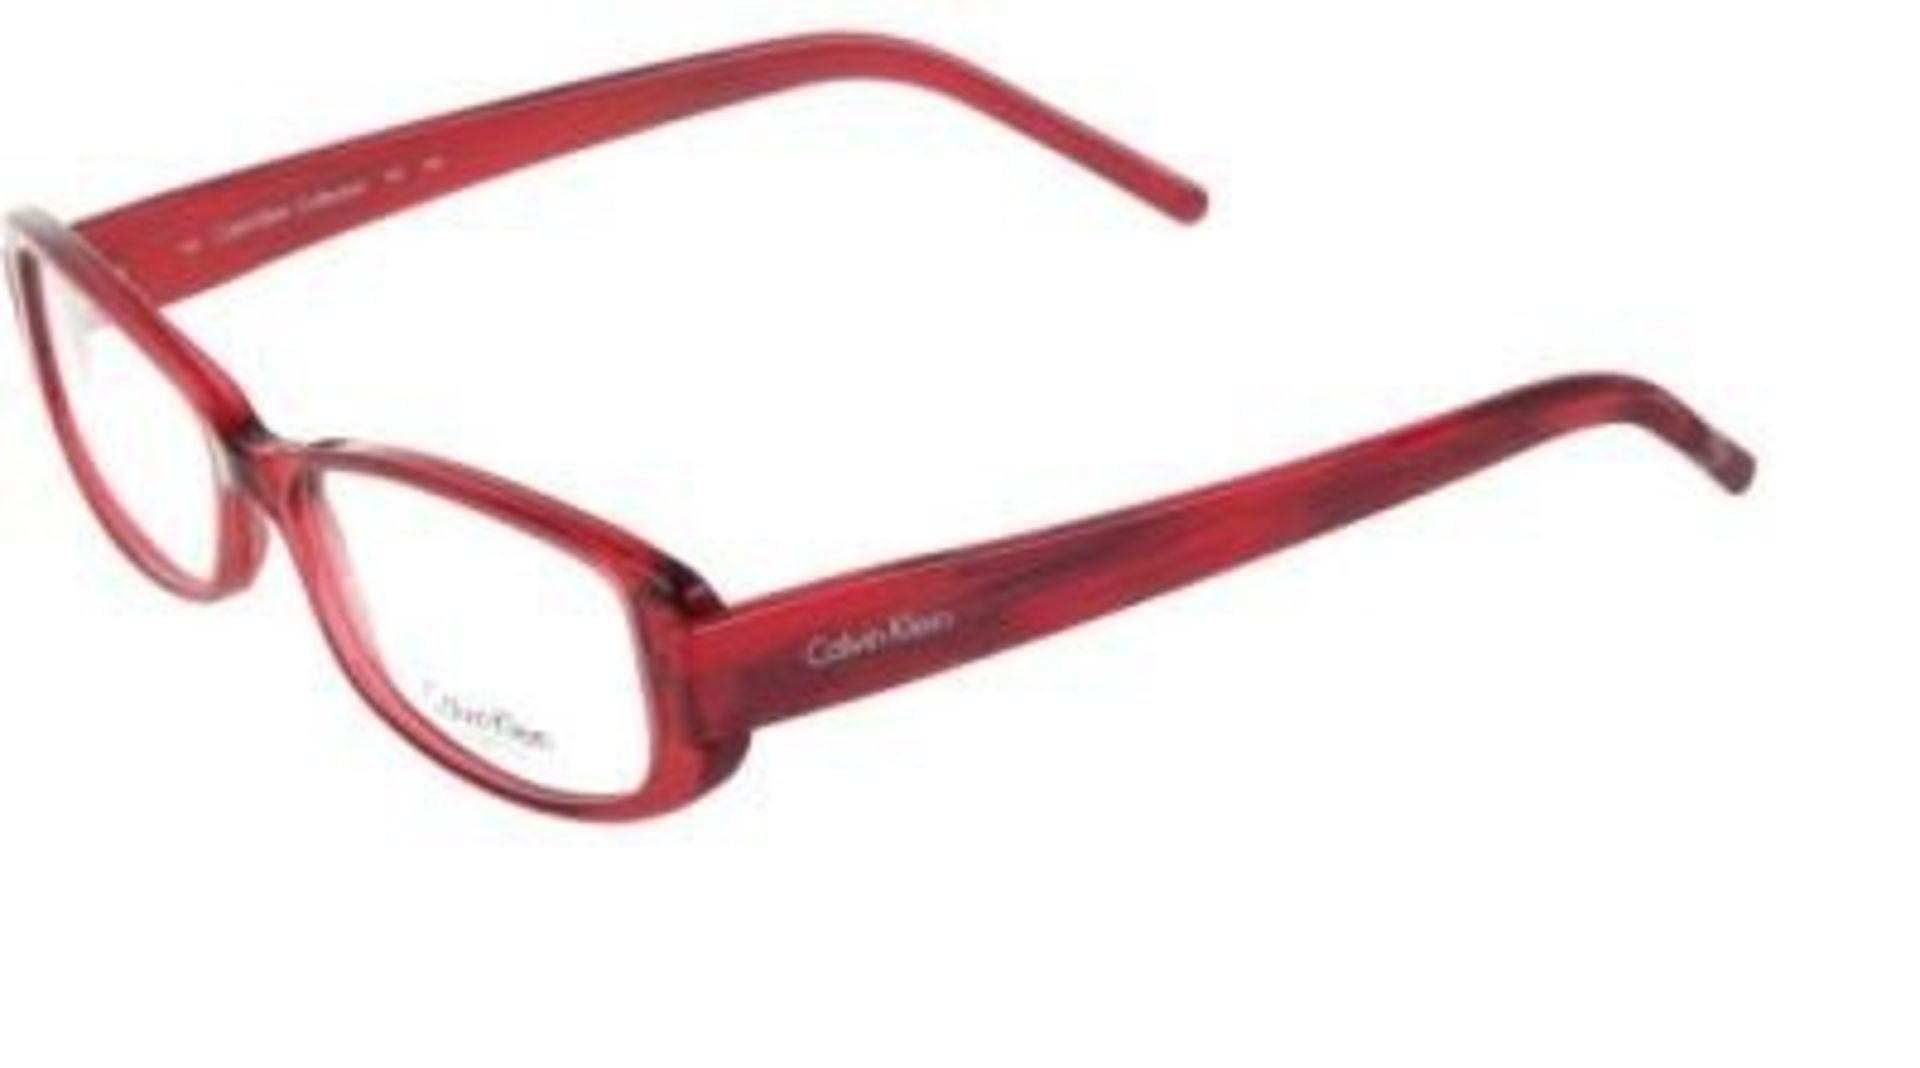 21 x Calvin Klein Glasses Frames Model: CK787-144 Colour Red